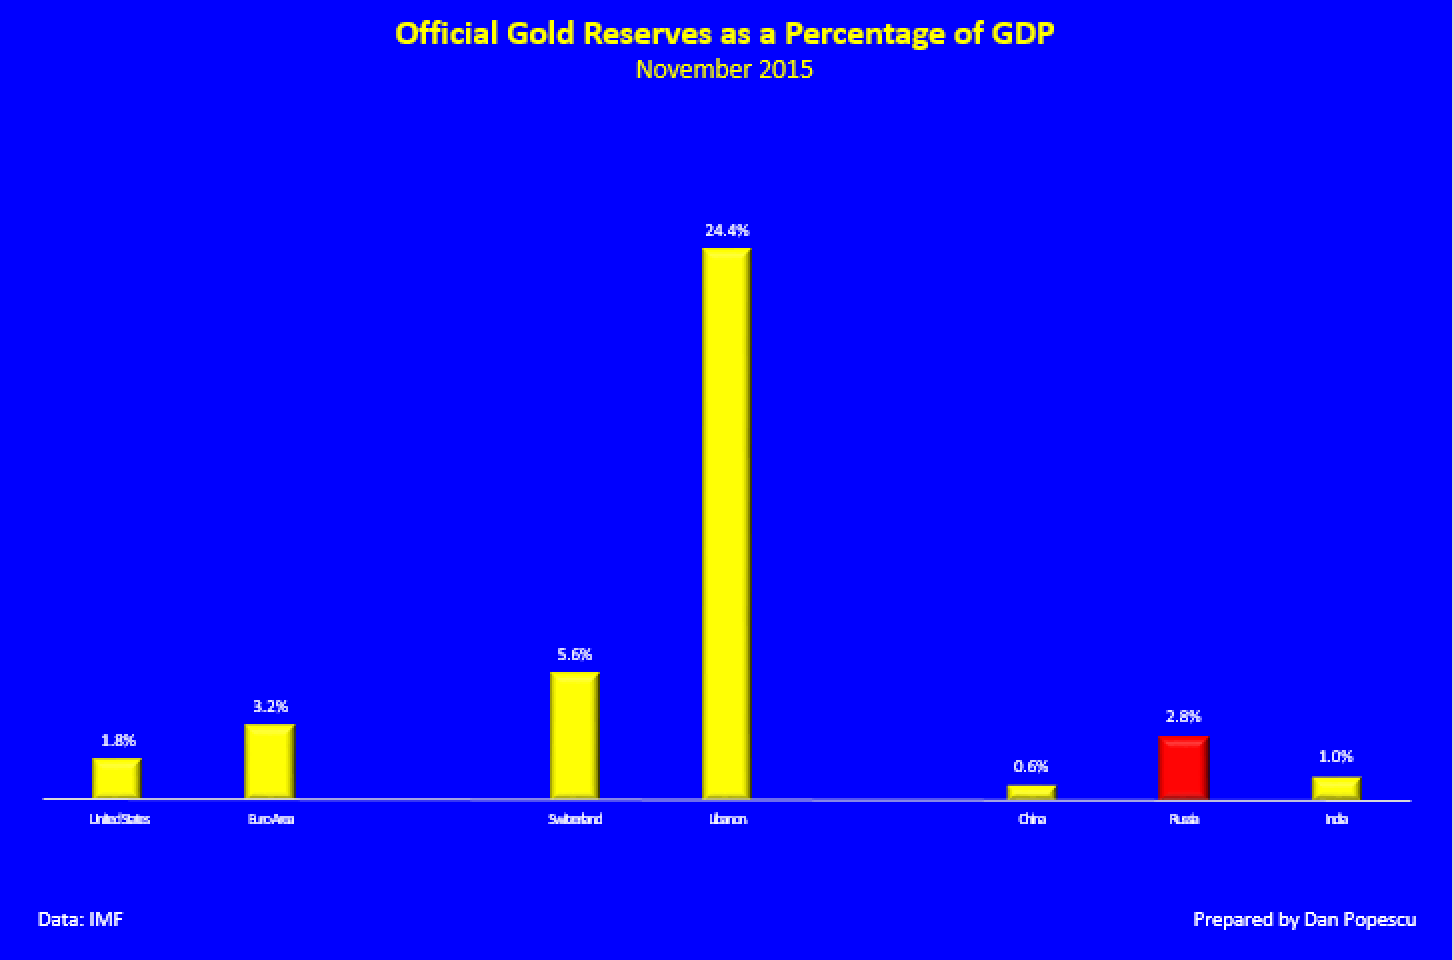 Les réserves officielles d'or en pourcentage du PIB